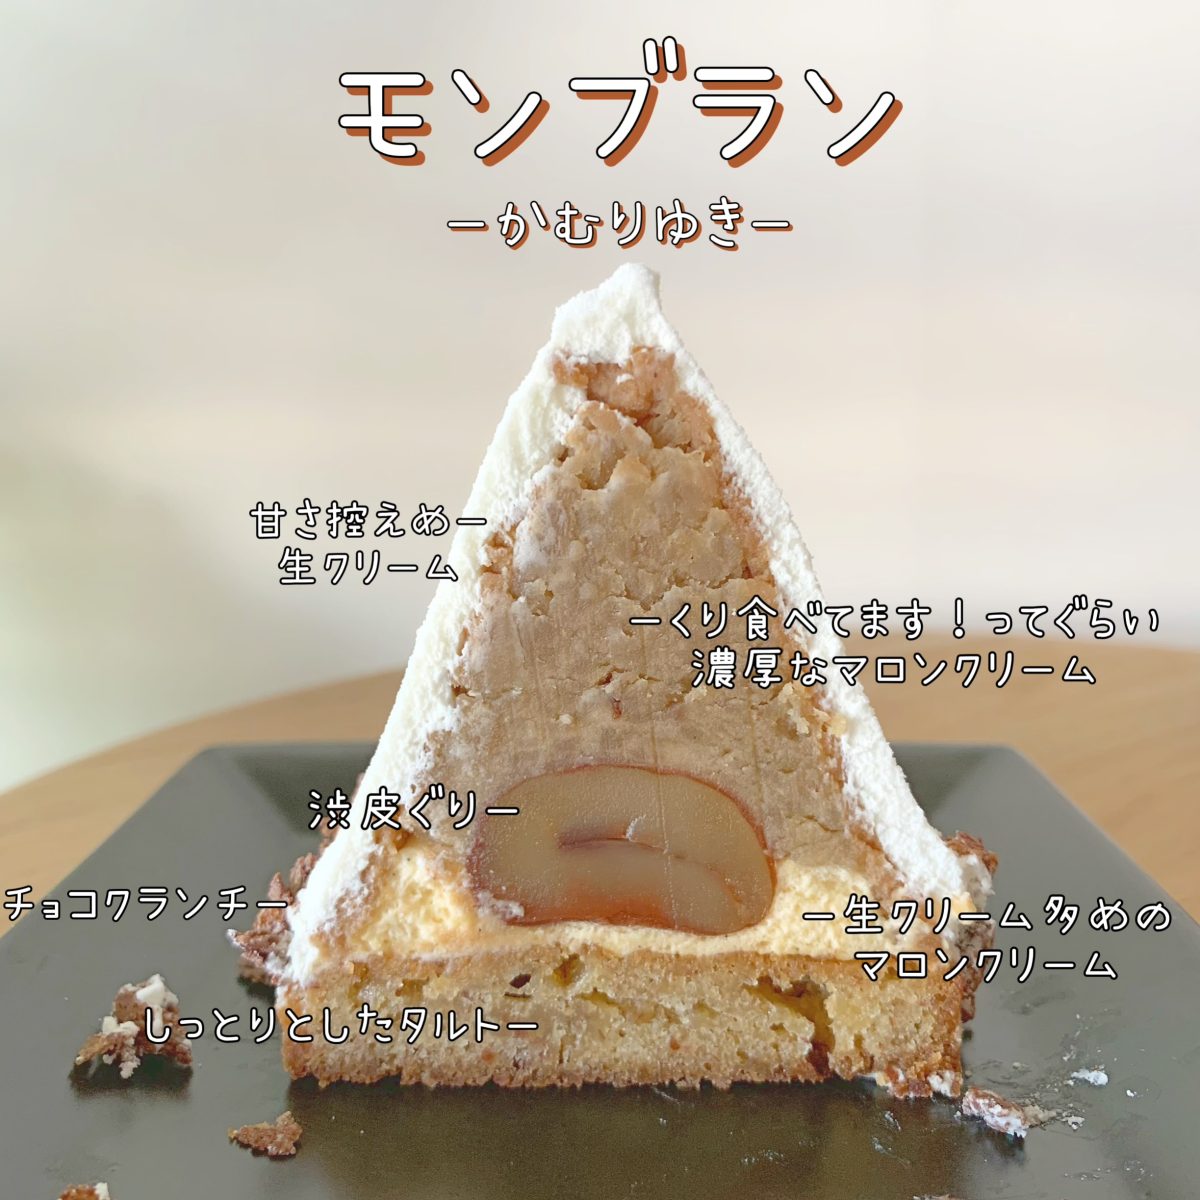 金＆銀のティラミス？！大阪・新町のおいしいケーキ屋さん『Patisserie ginkgo(パティスリージャンゴ)』